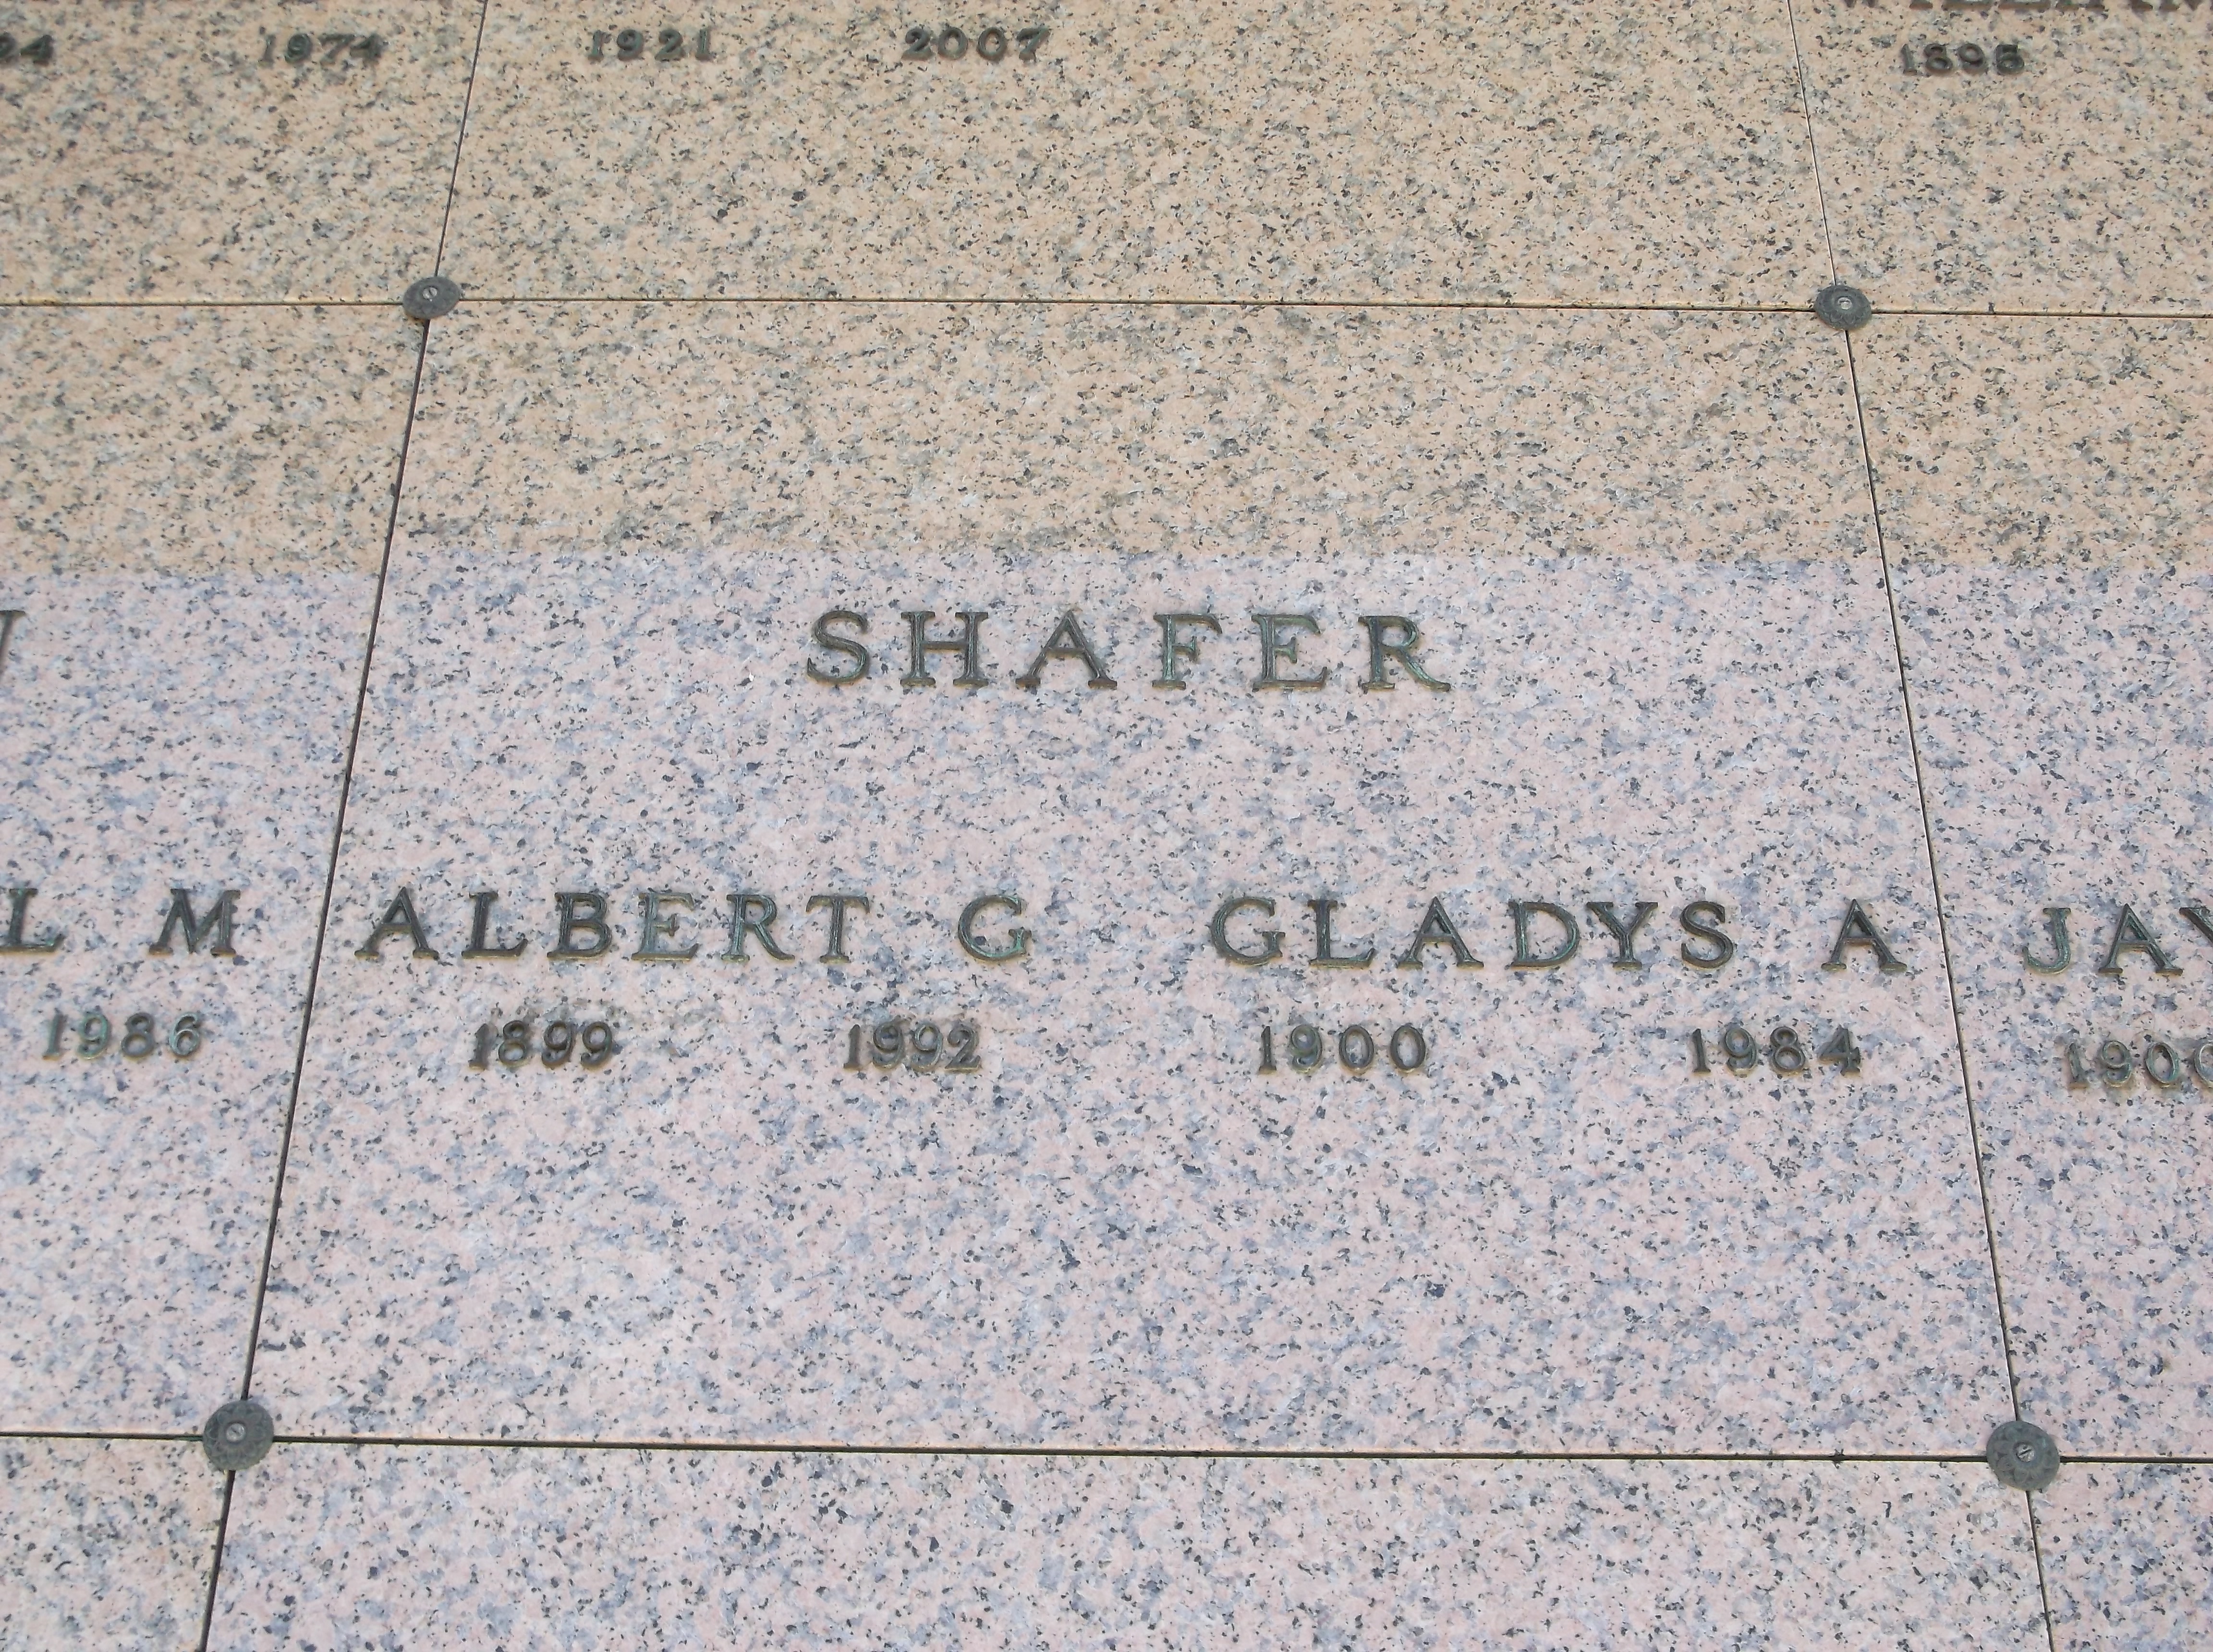 Albert G Shafer